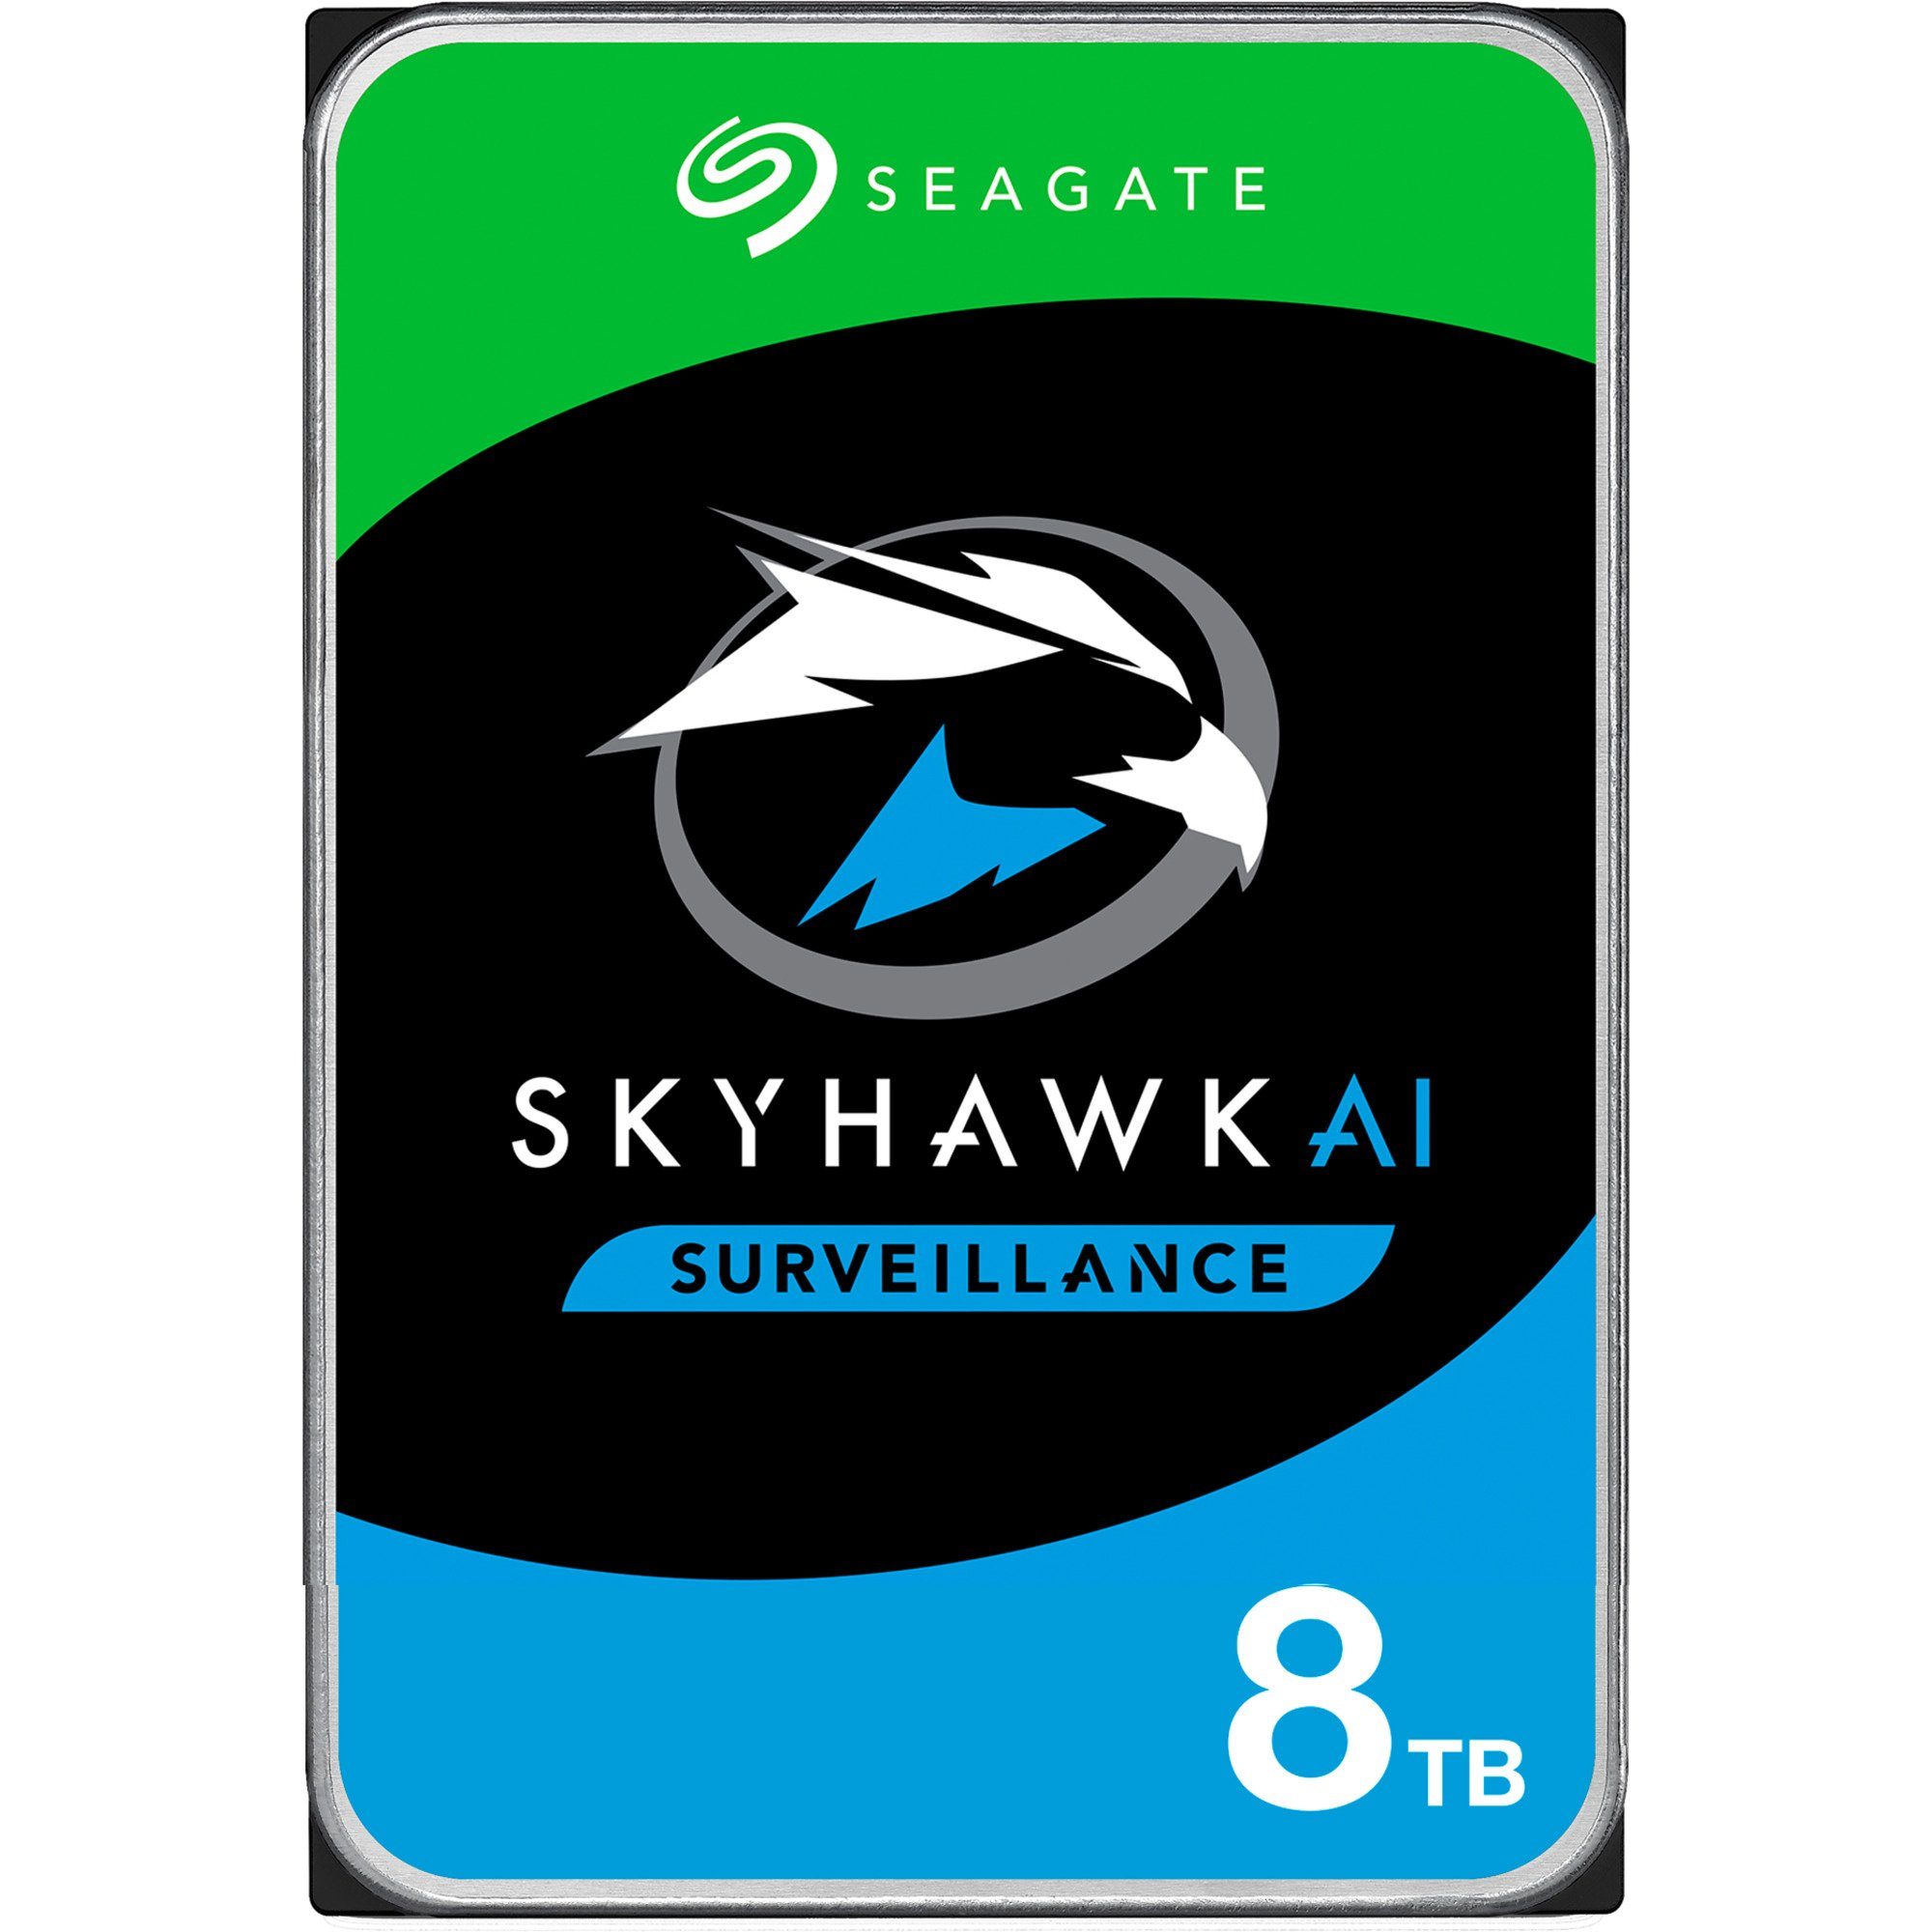 Seagate SkyHawk AI 8 TB interne HDD-Festplatte